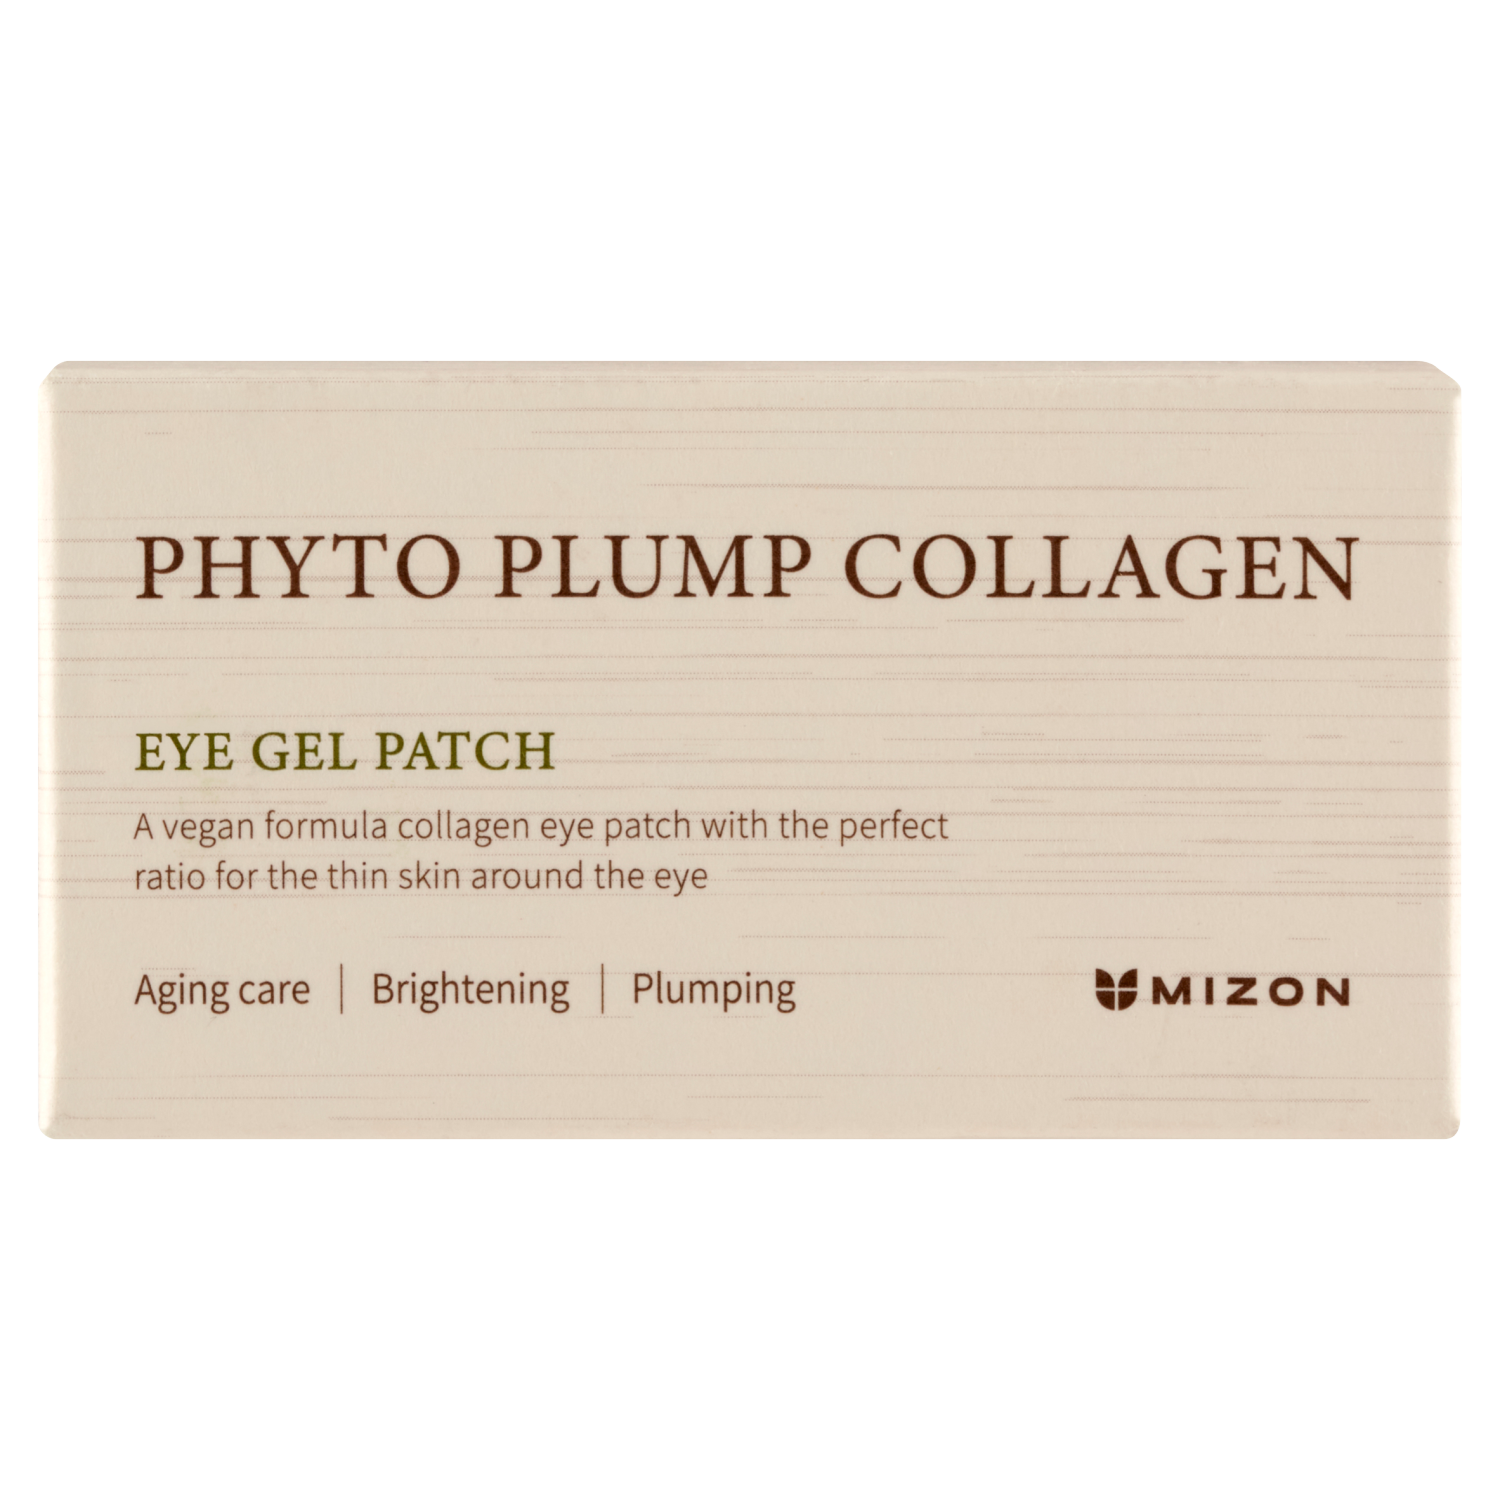 Лифтинг-патчи для глаз Mizon Phyto Plump Collagen, 60 штук увлажняющие патчи с гиалуроновой кислотой и аминокислотами